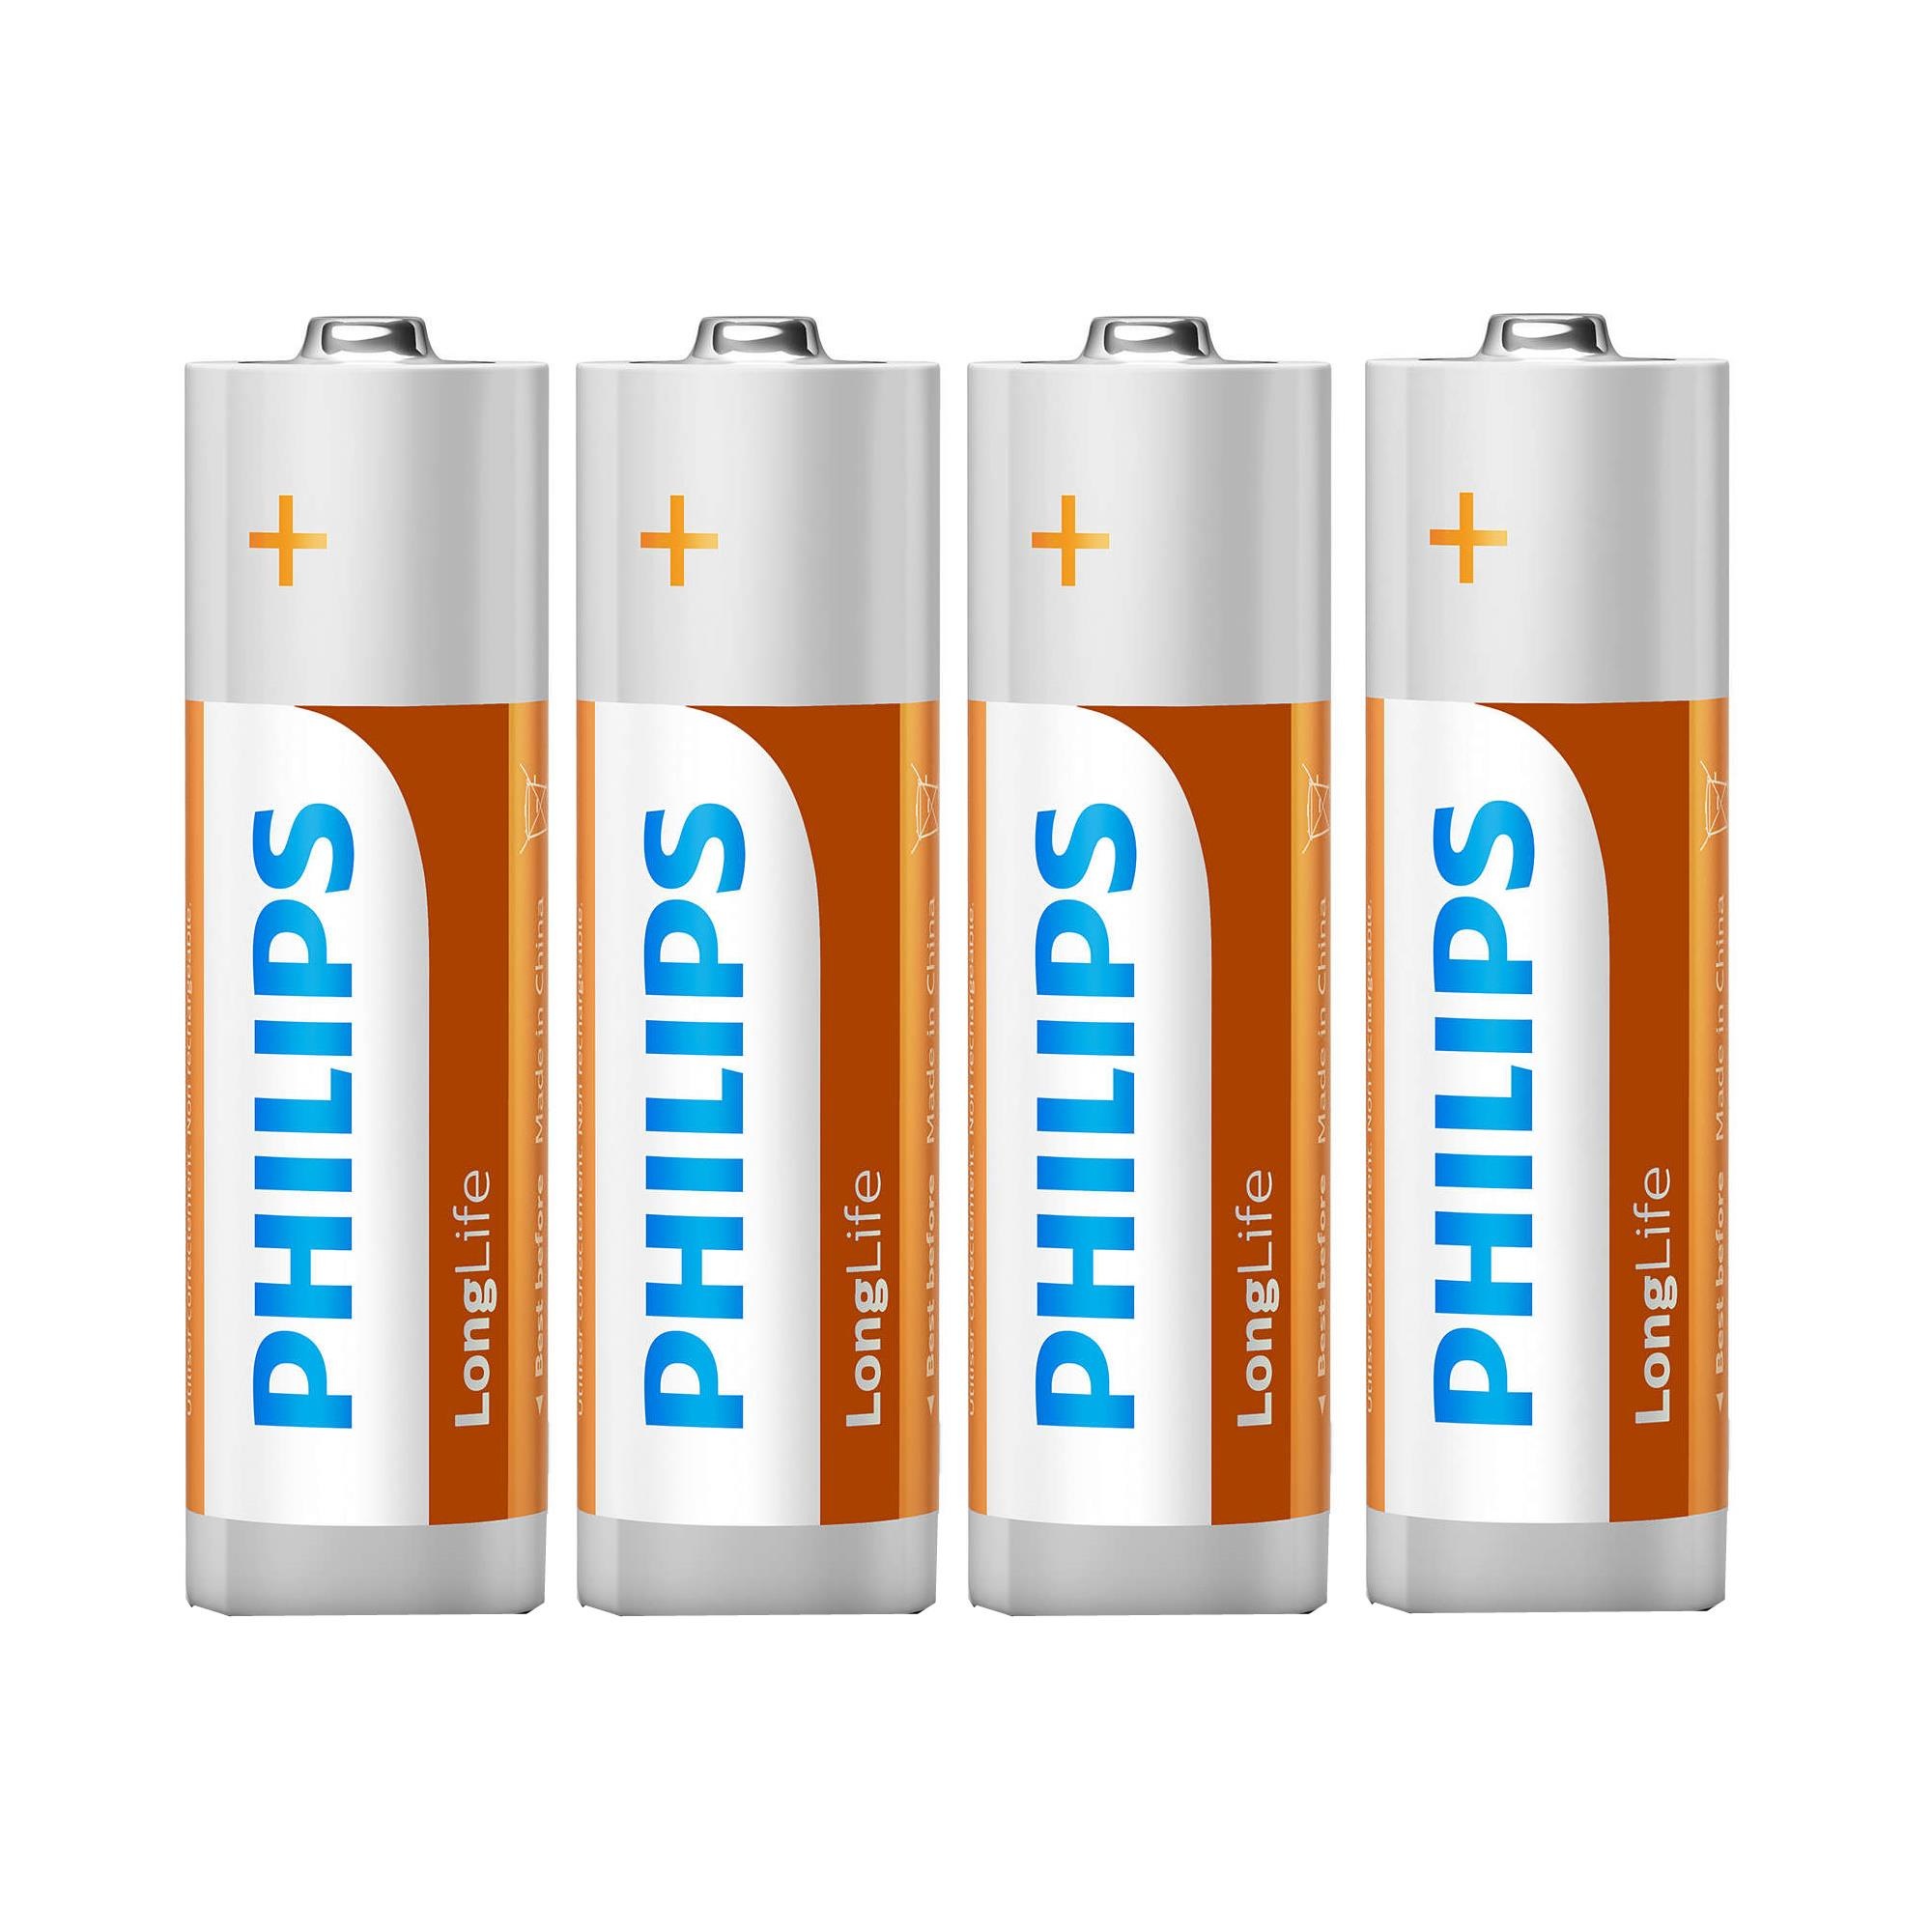 Uitvoeren weg Overtreding Pro Plus Philips Longlife batterijen AA 4 stuks in folie verpakking kopen?  - 2Cheap